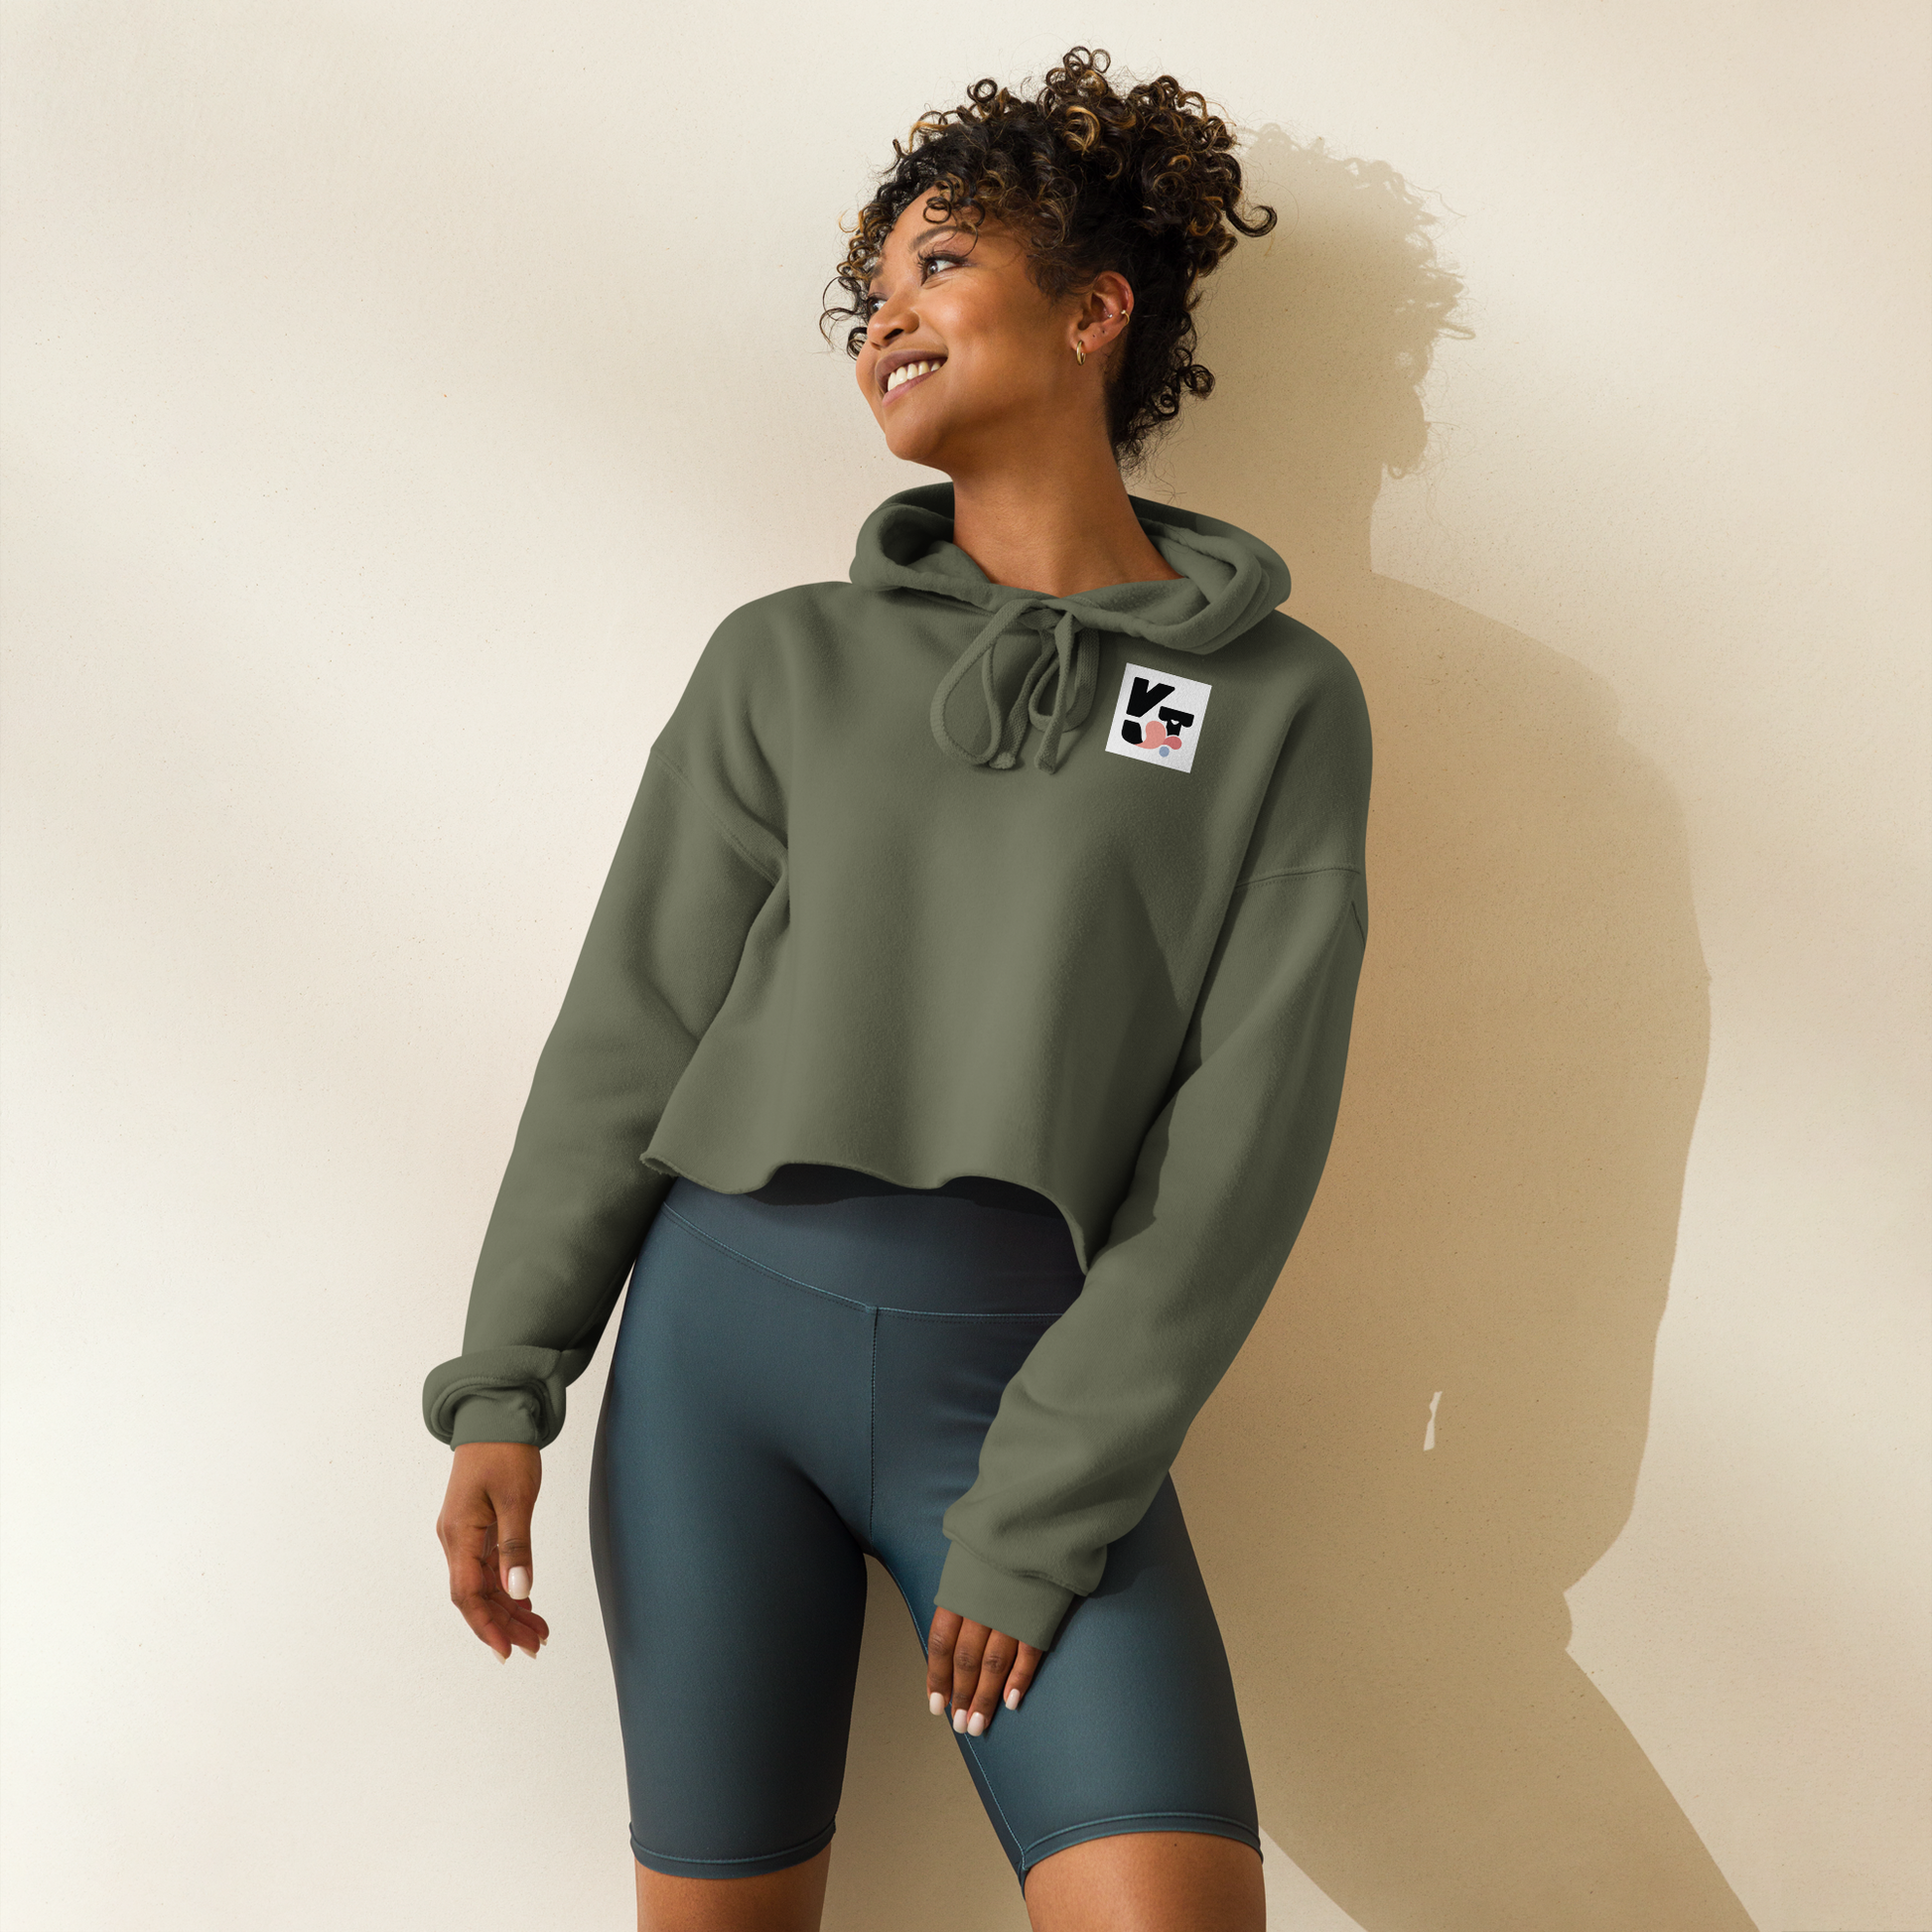 Kurzer Crop-Hoodie "Tunnelrumps" mit Logoaufdruck vom Hundesportmarke Klexgetier. Das Modell zeigt eine lächelnde Frau mit lockigem Haar, die den olivgrünen Pullover in einem hellen Ambiente trägt.